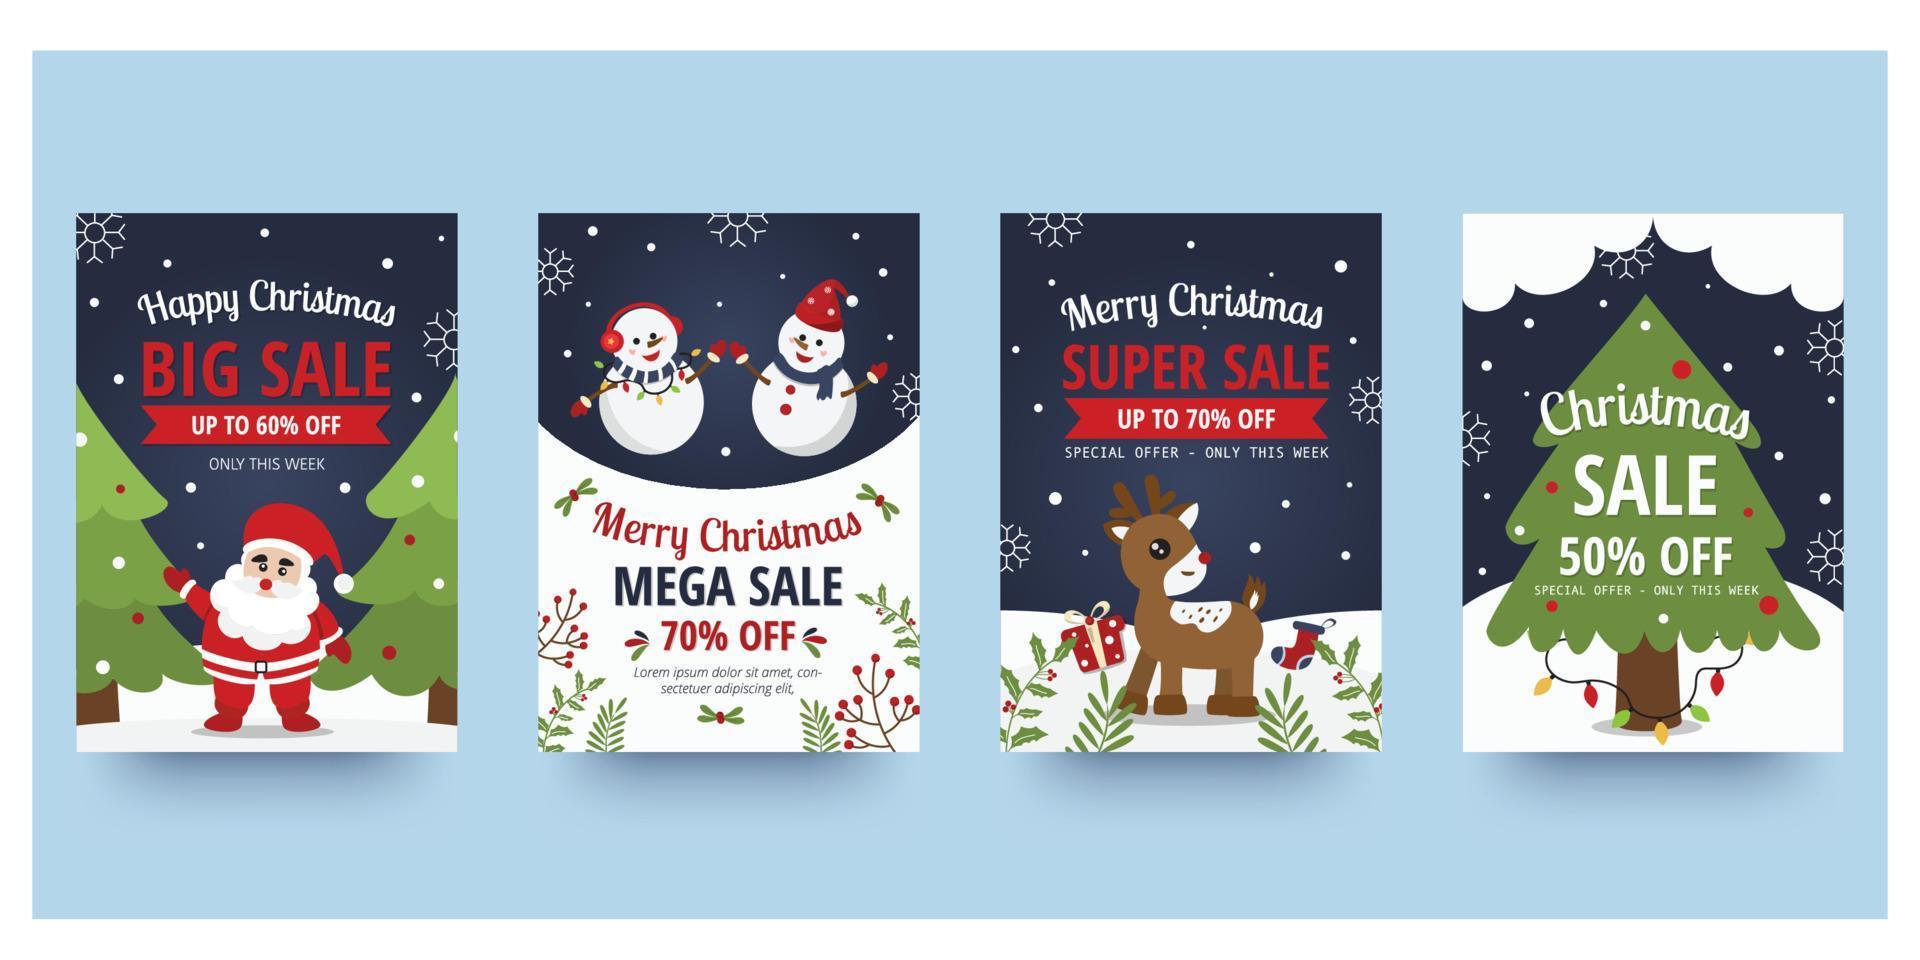 Weihnachtssle-Flyer und Plakatdesign mit Verkaufsförderungstext und buntem Weihnachtselement. Vektor-Illustration. vektor